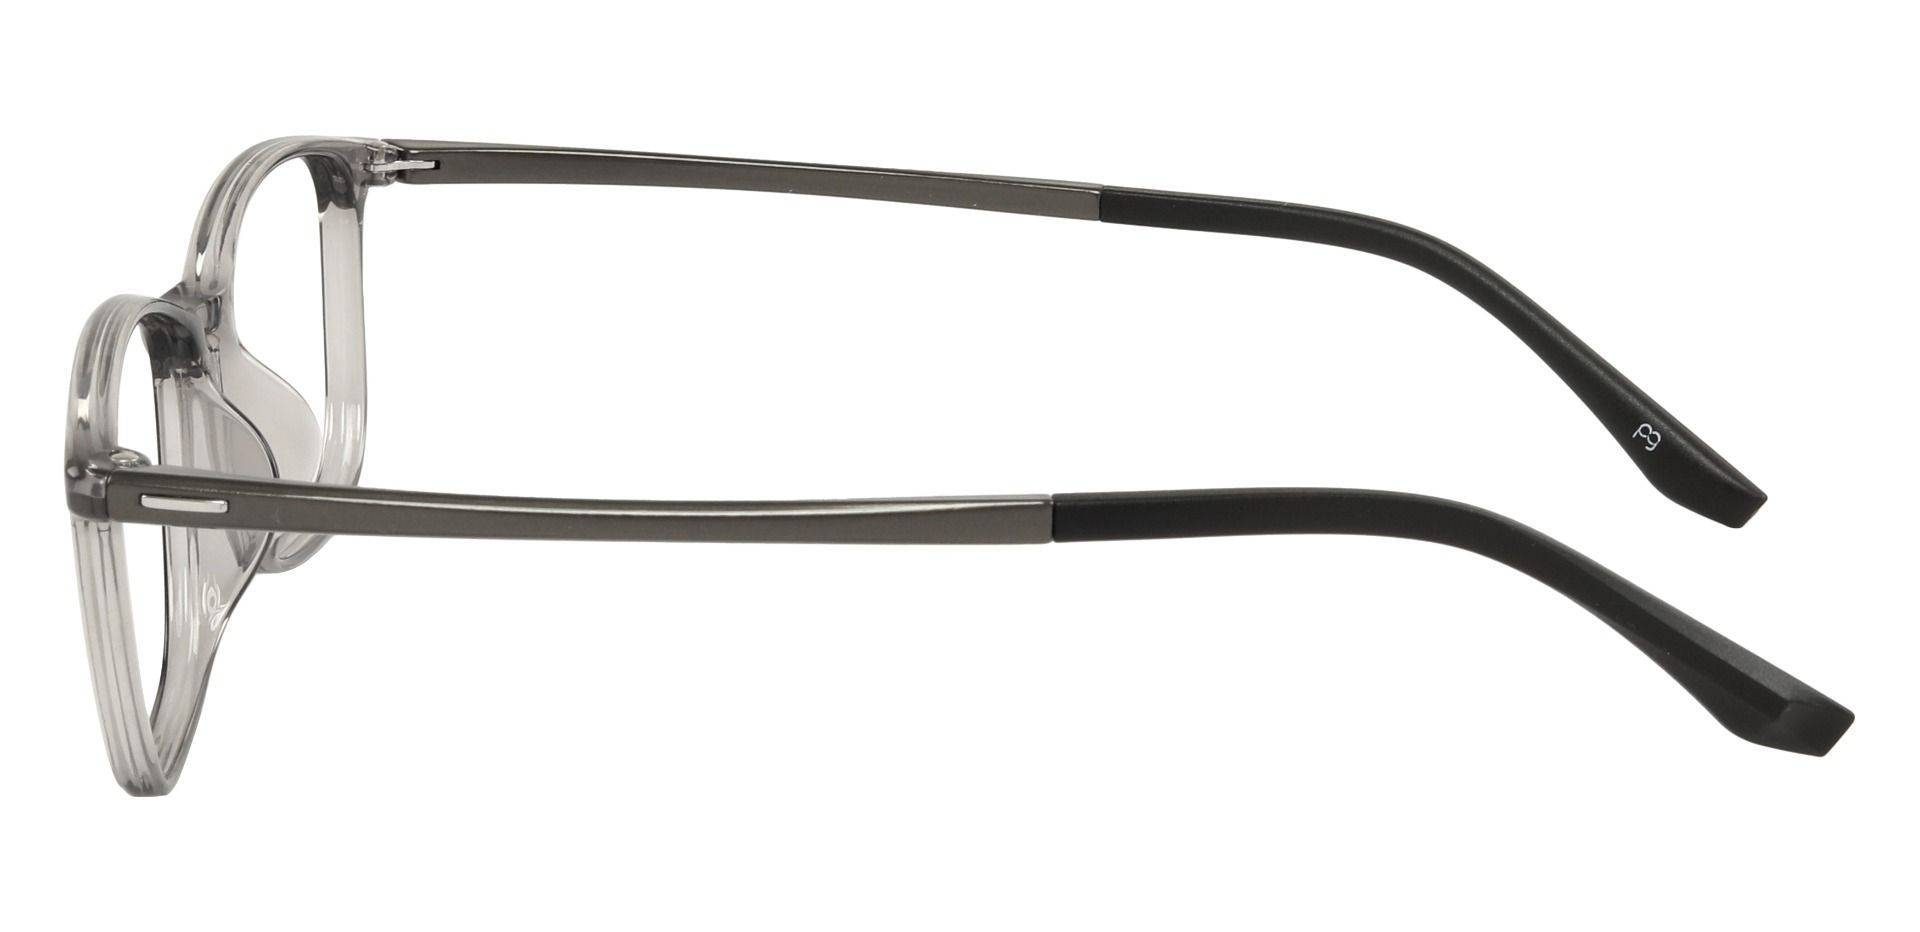 Glenburn Rectangle Lined Bifocal Glasses - Gray | Women's Eyeglasses ...